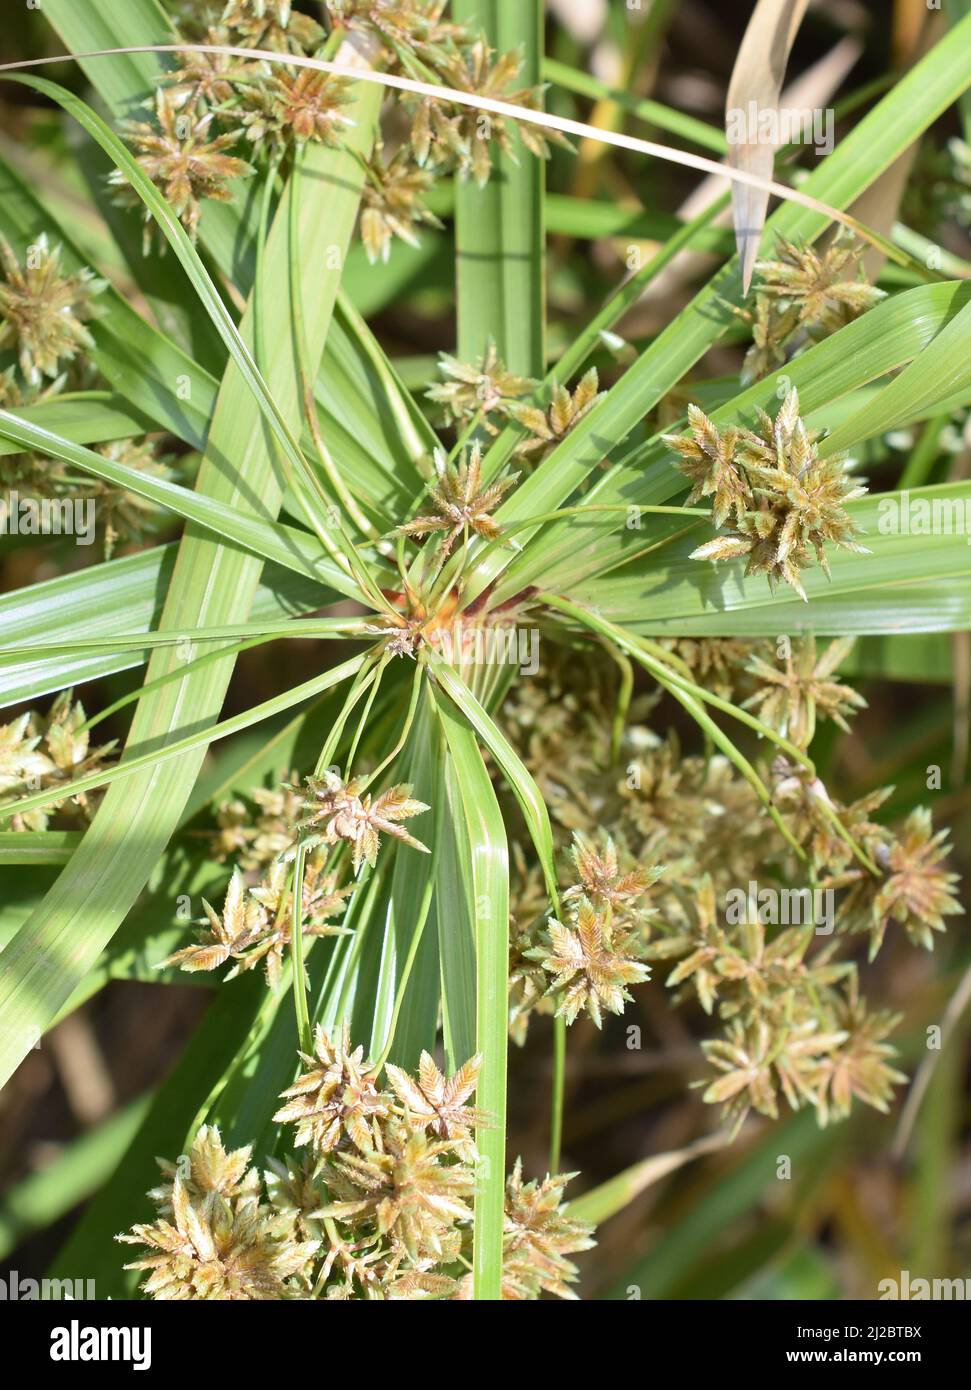 Flowering plant umbrella papyrus Cyperus alternifolius Stock Photo